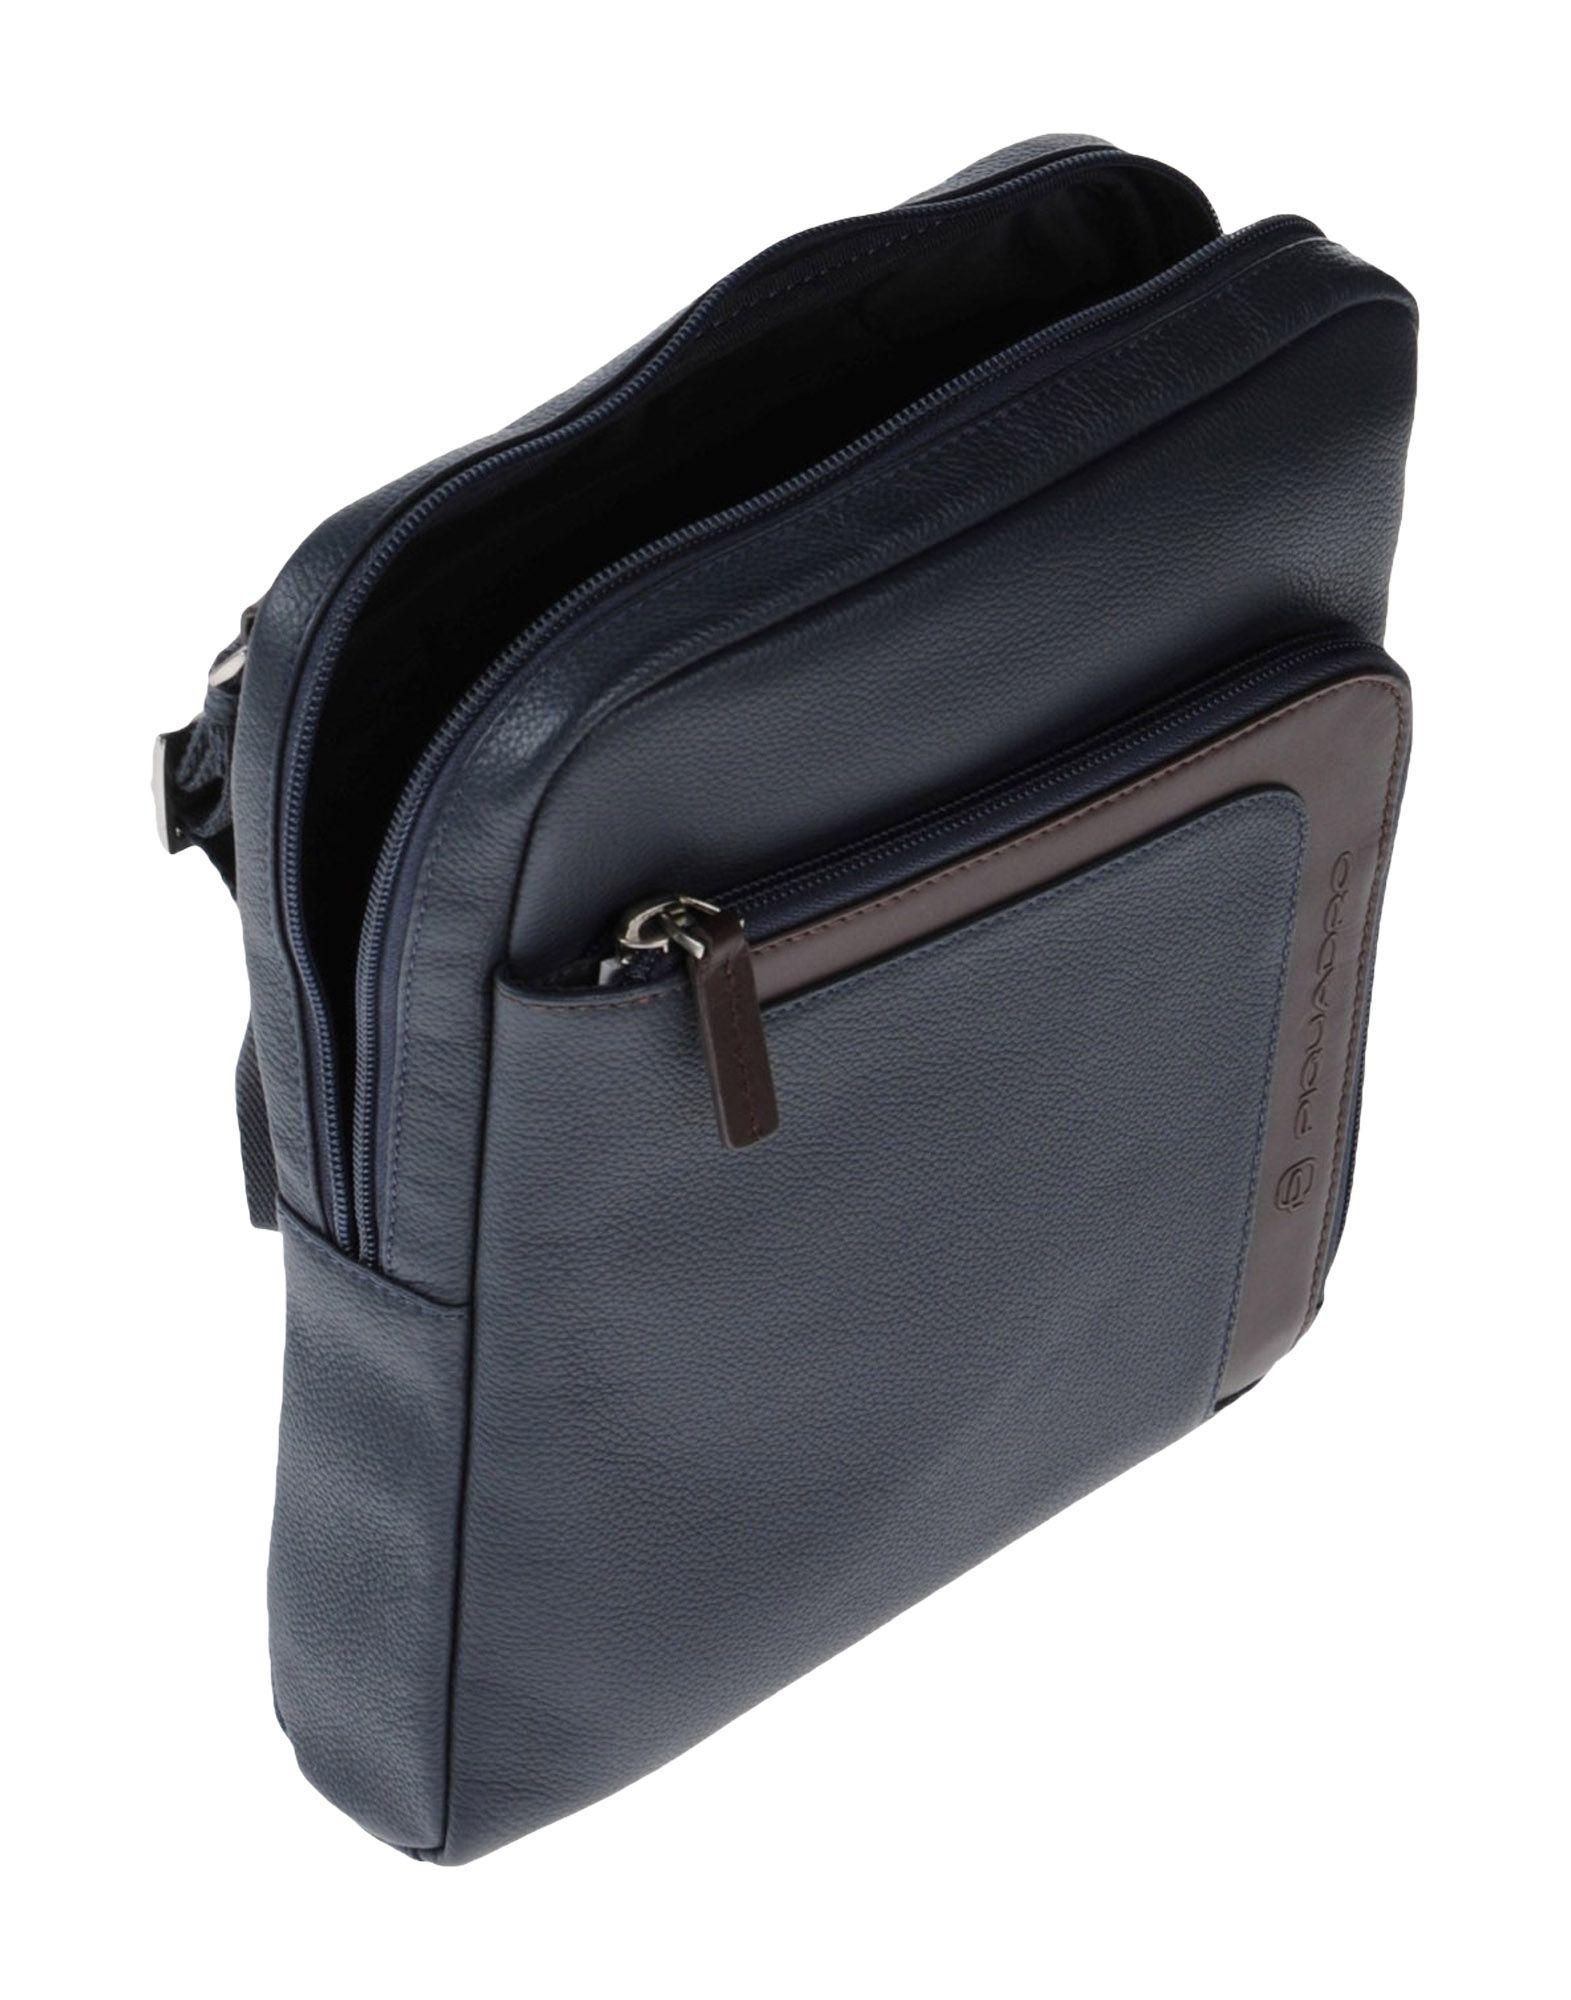 Piquadro Leather Cross-body Bag in Dark Blue (Blue) for Men - Lyst